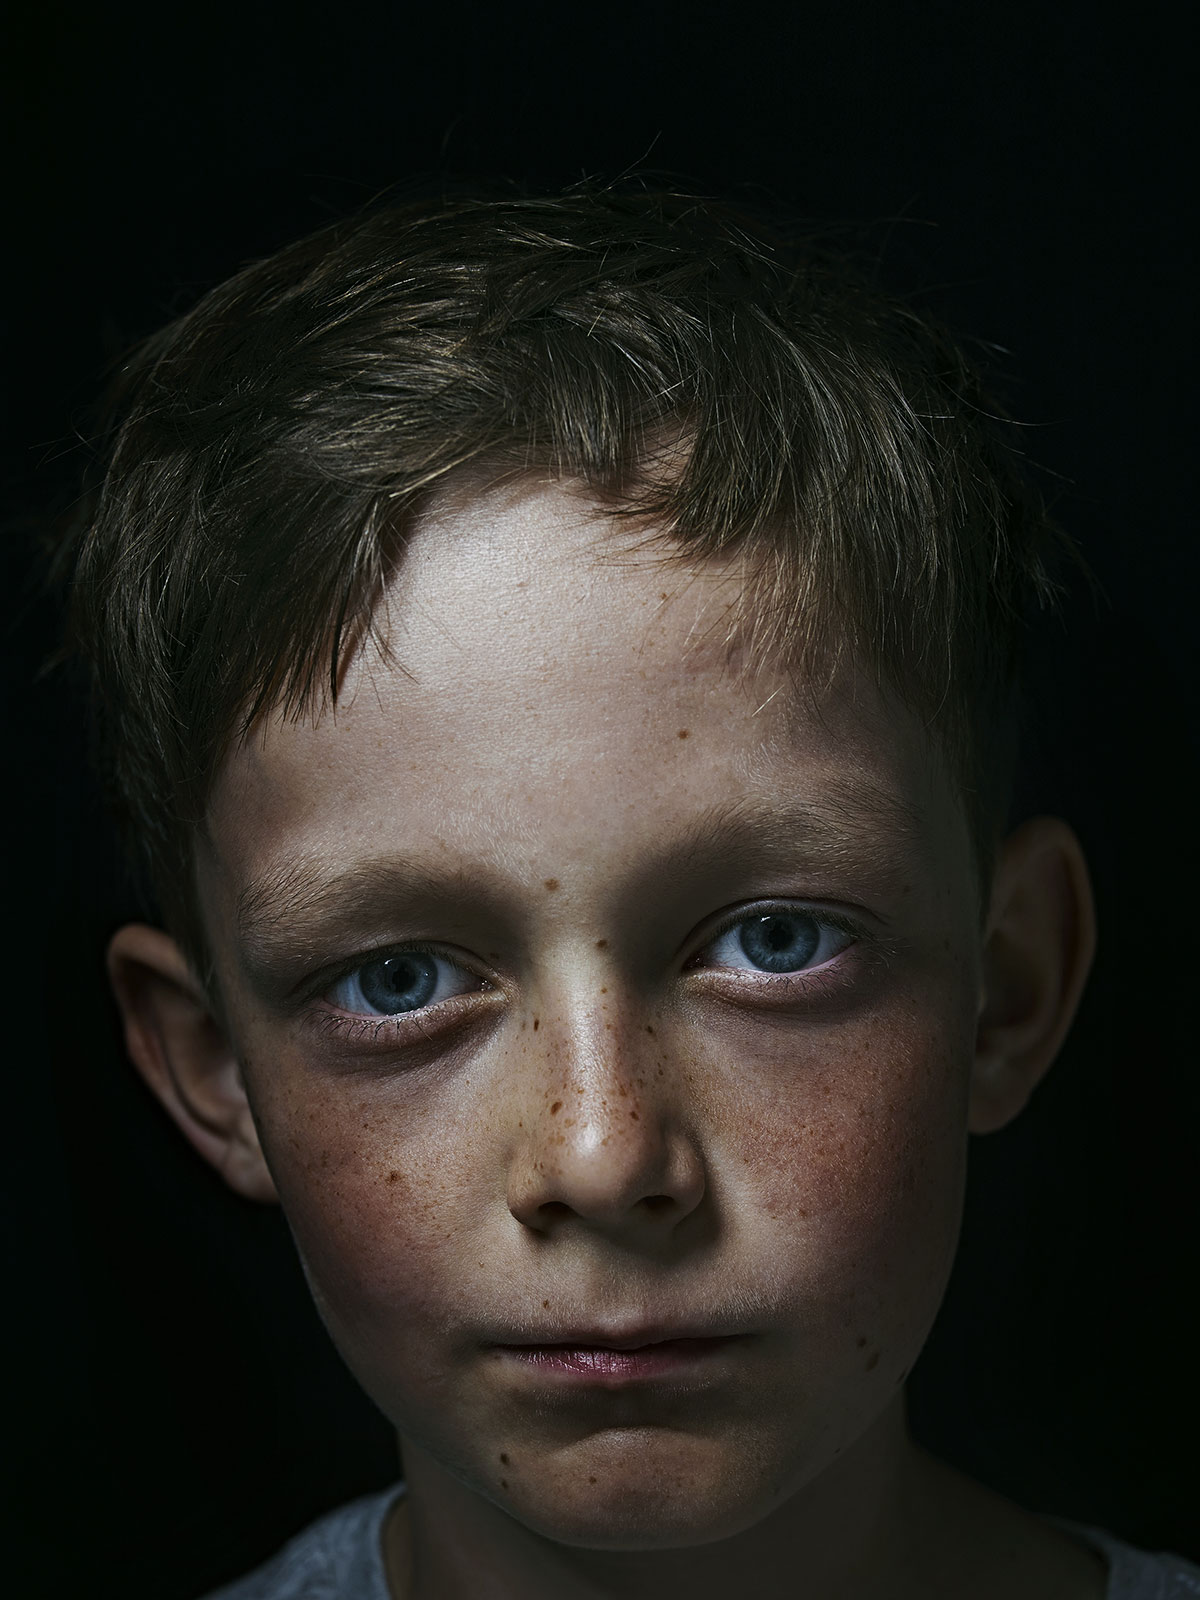 Domestic Violence Against Women - Toby Dixon